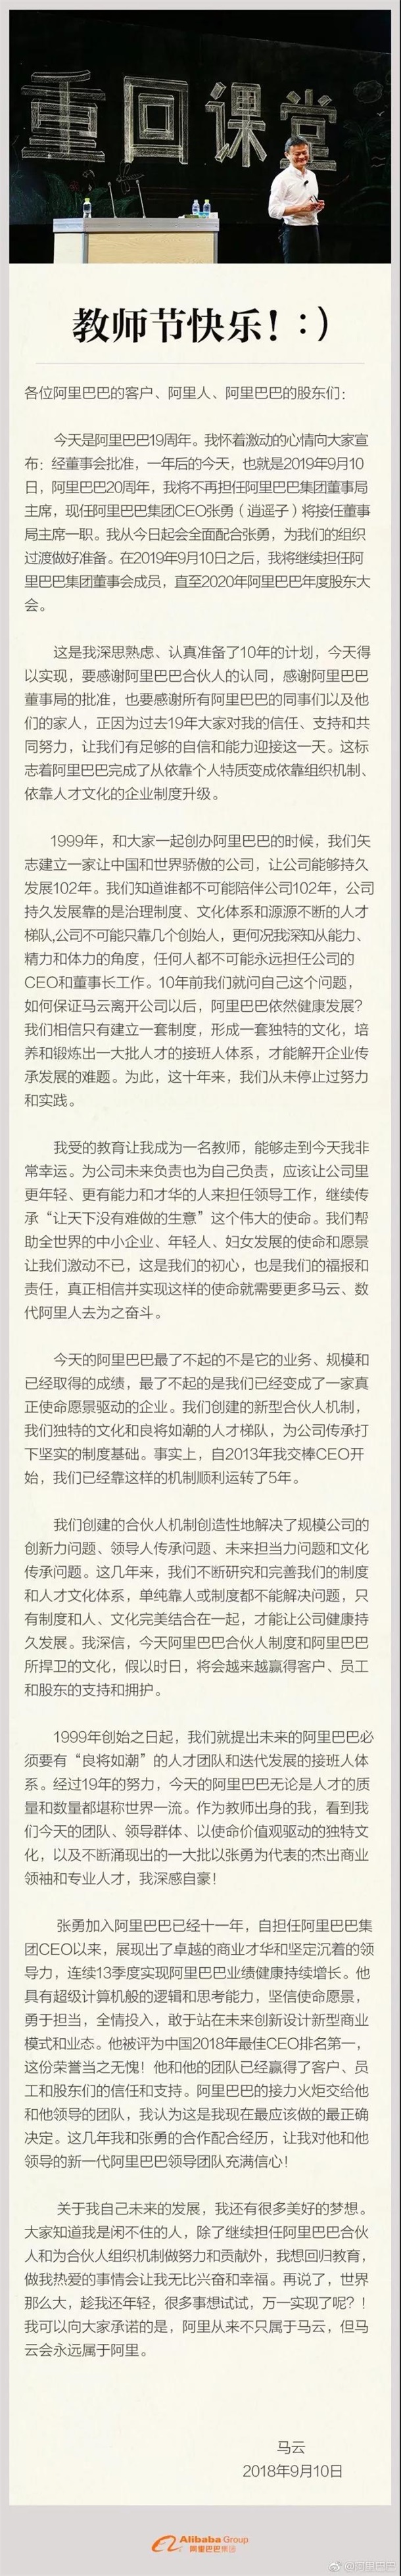 快讯|马云宣布将辞去董事局主席 CEO张勇接任-中国网地产